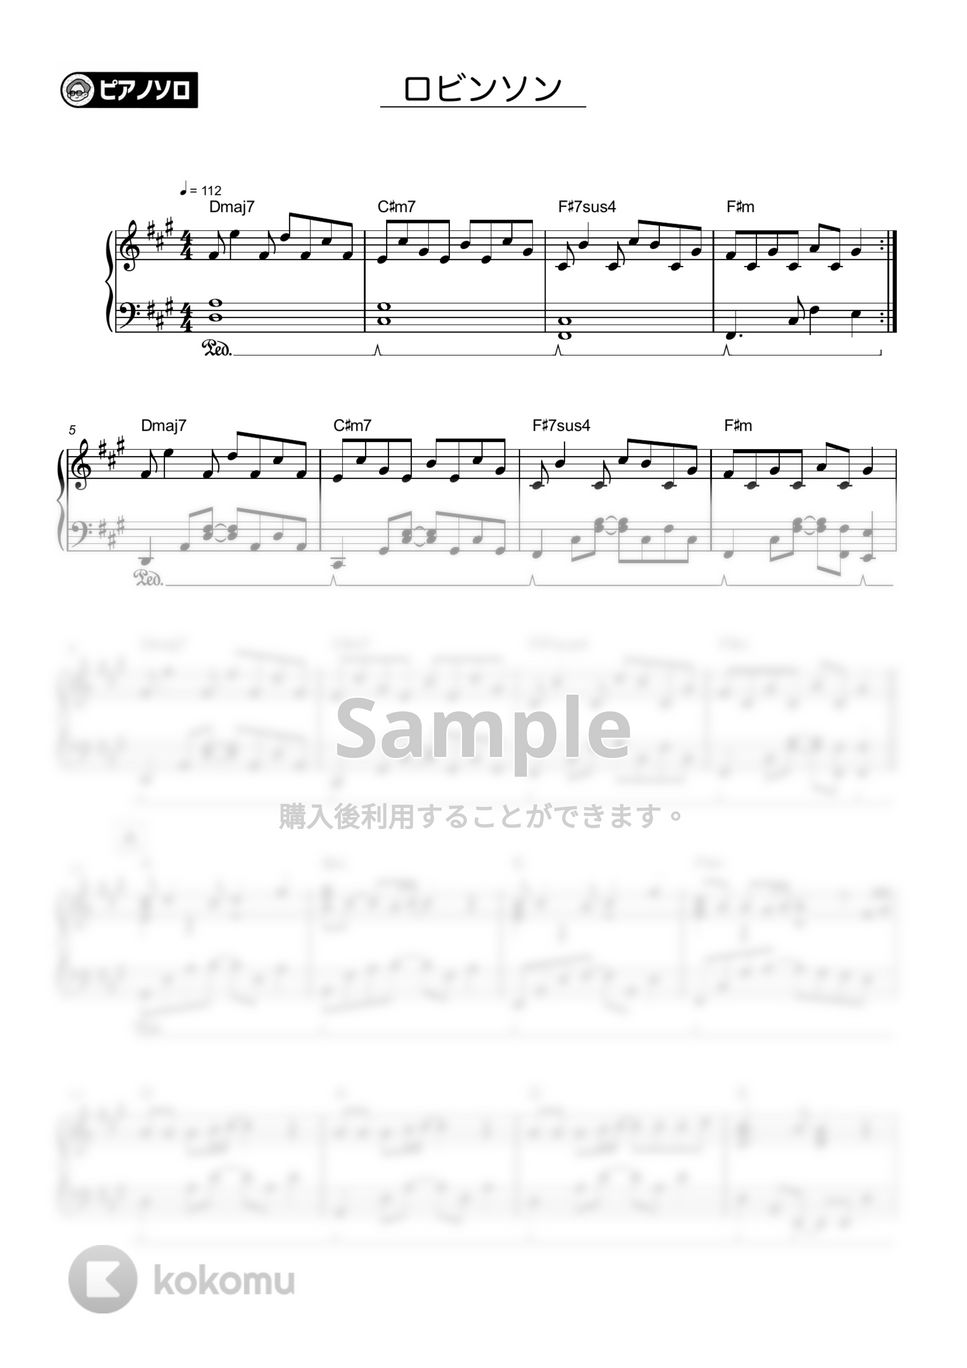 スピッツ - ロビンソン by シータピアノ